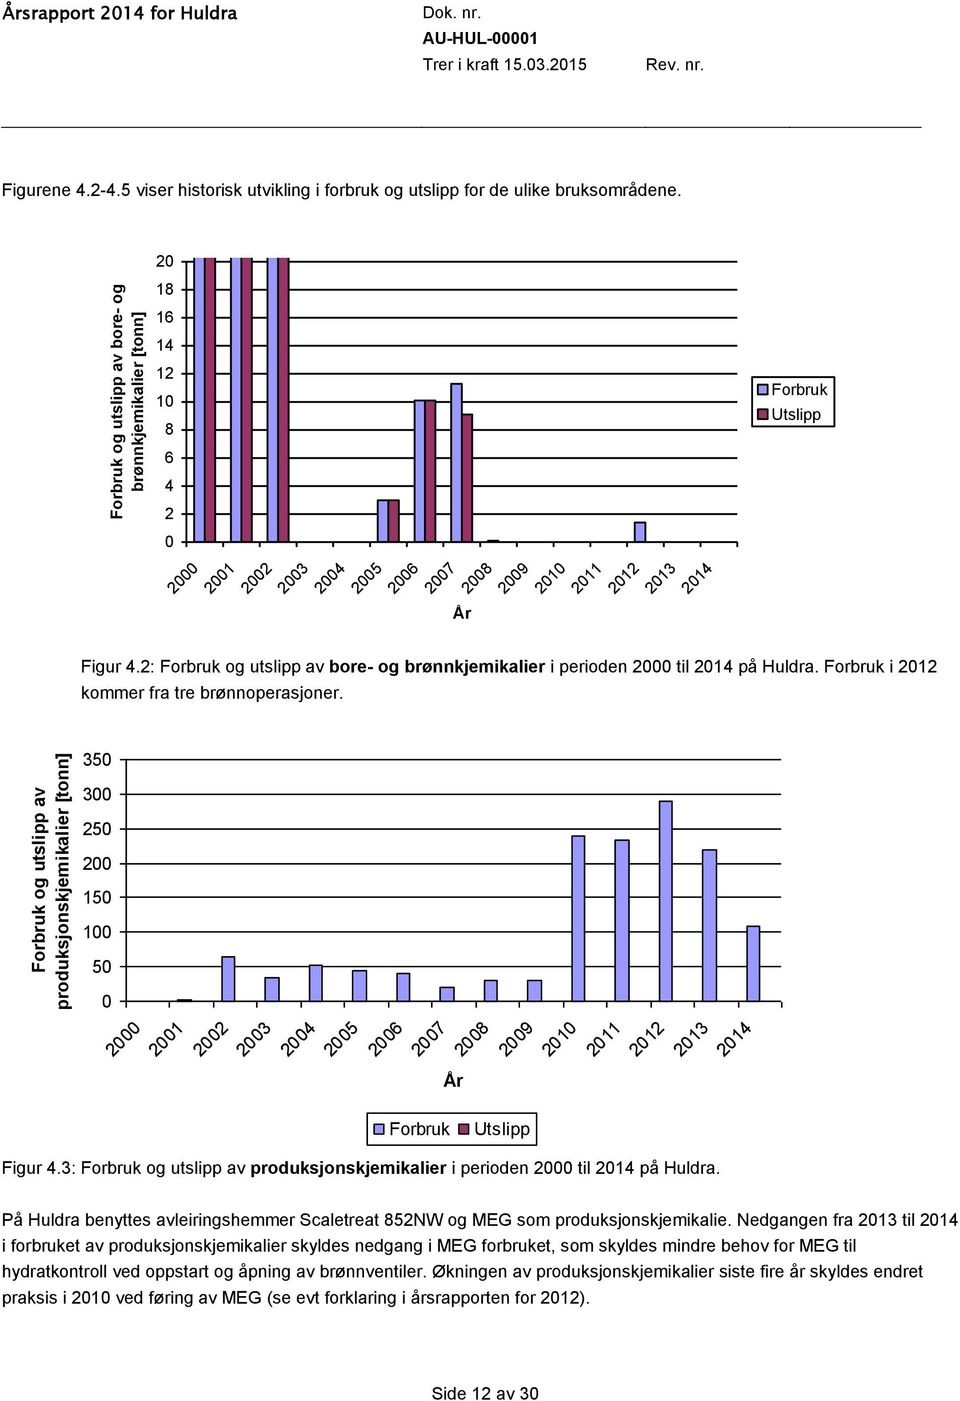 2: Forbruk og utslipp av bore- og brønnkjemikalier i perioden 2000 til 2014 på Huldra. Forbruk i 2012 kommer fra tre brønnoperasjoner.